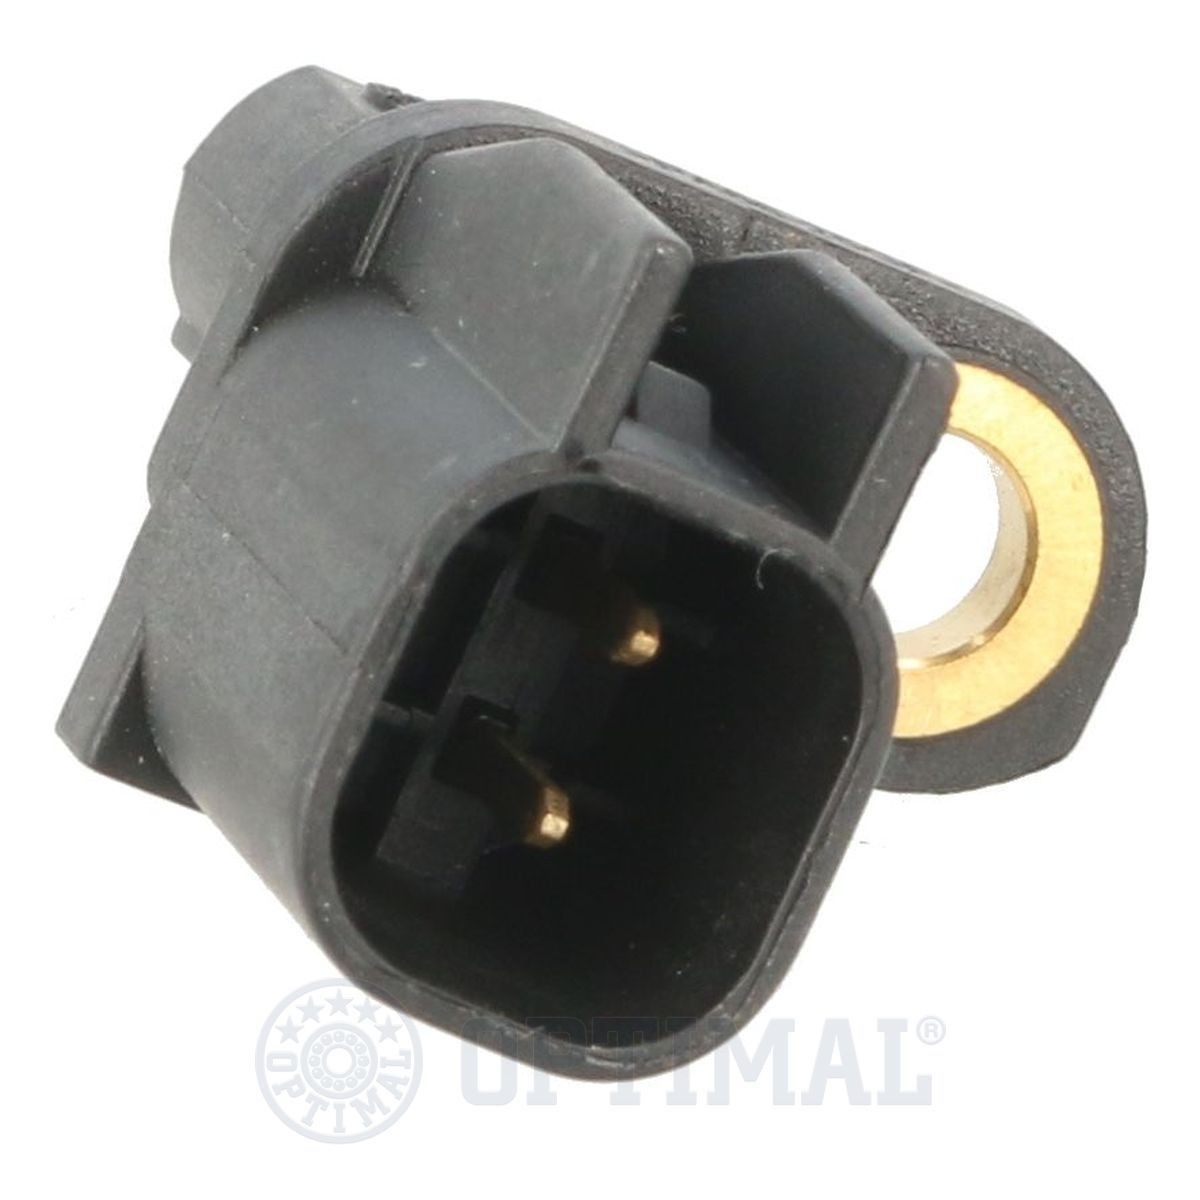 06S478 Anti lock brake sensor OPTIMAL 06-S478 review and test